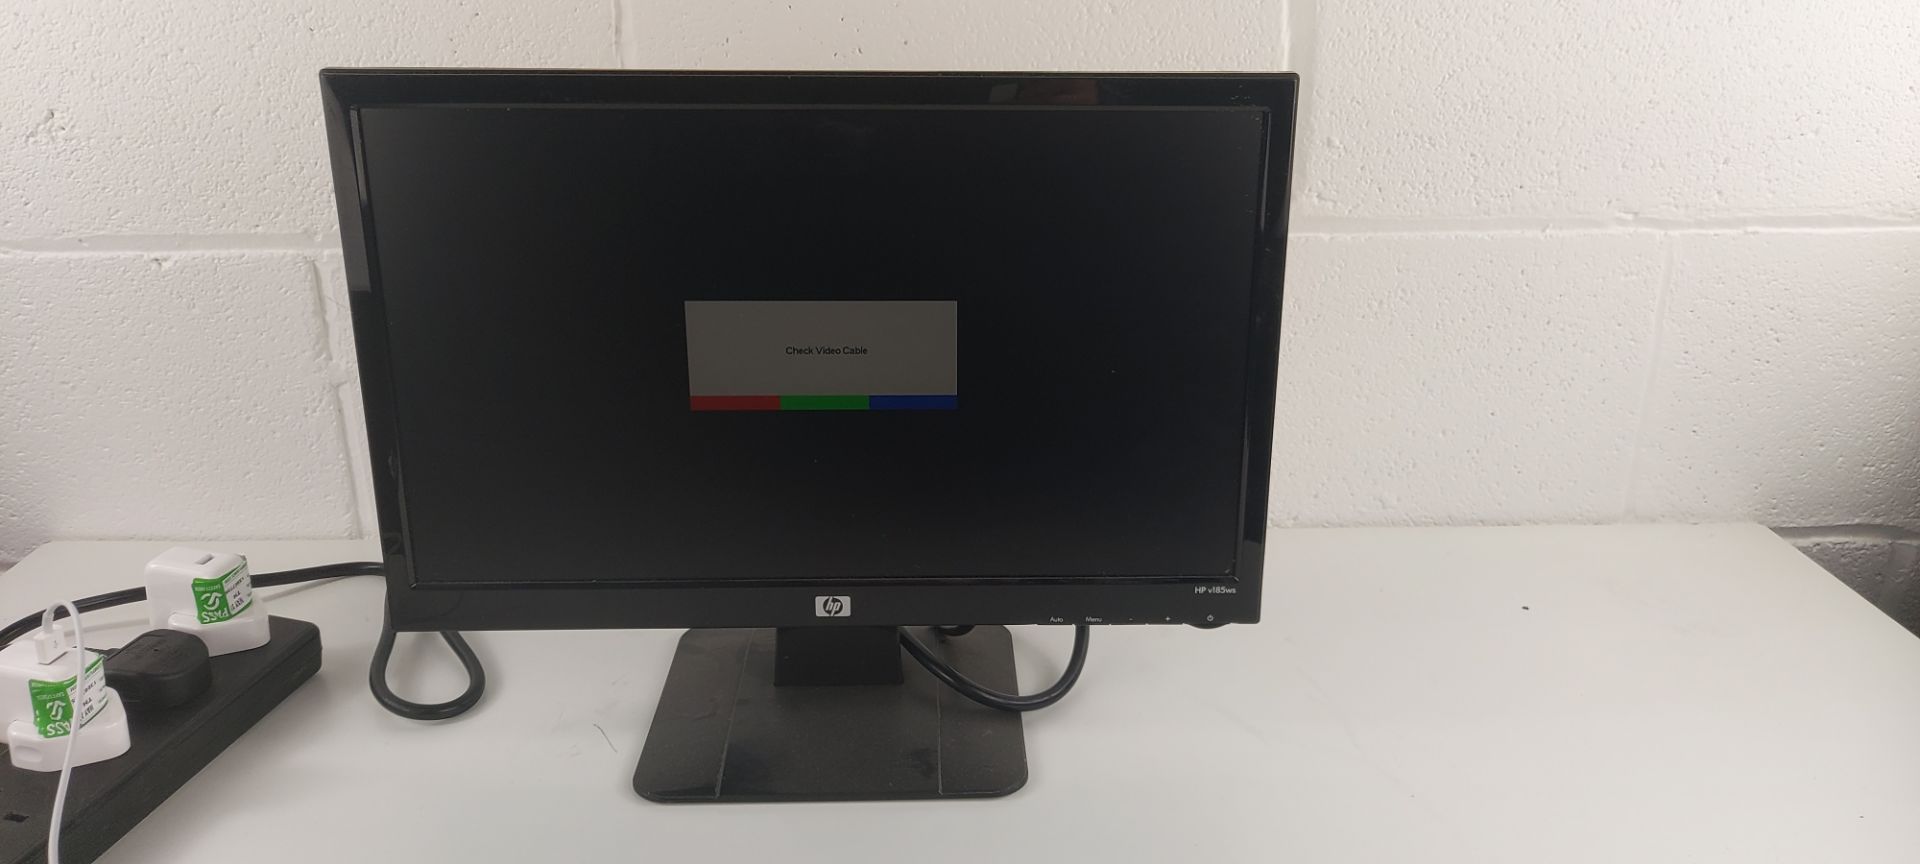 HP v185ws, 18.5" LCD Monitor